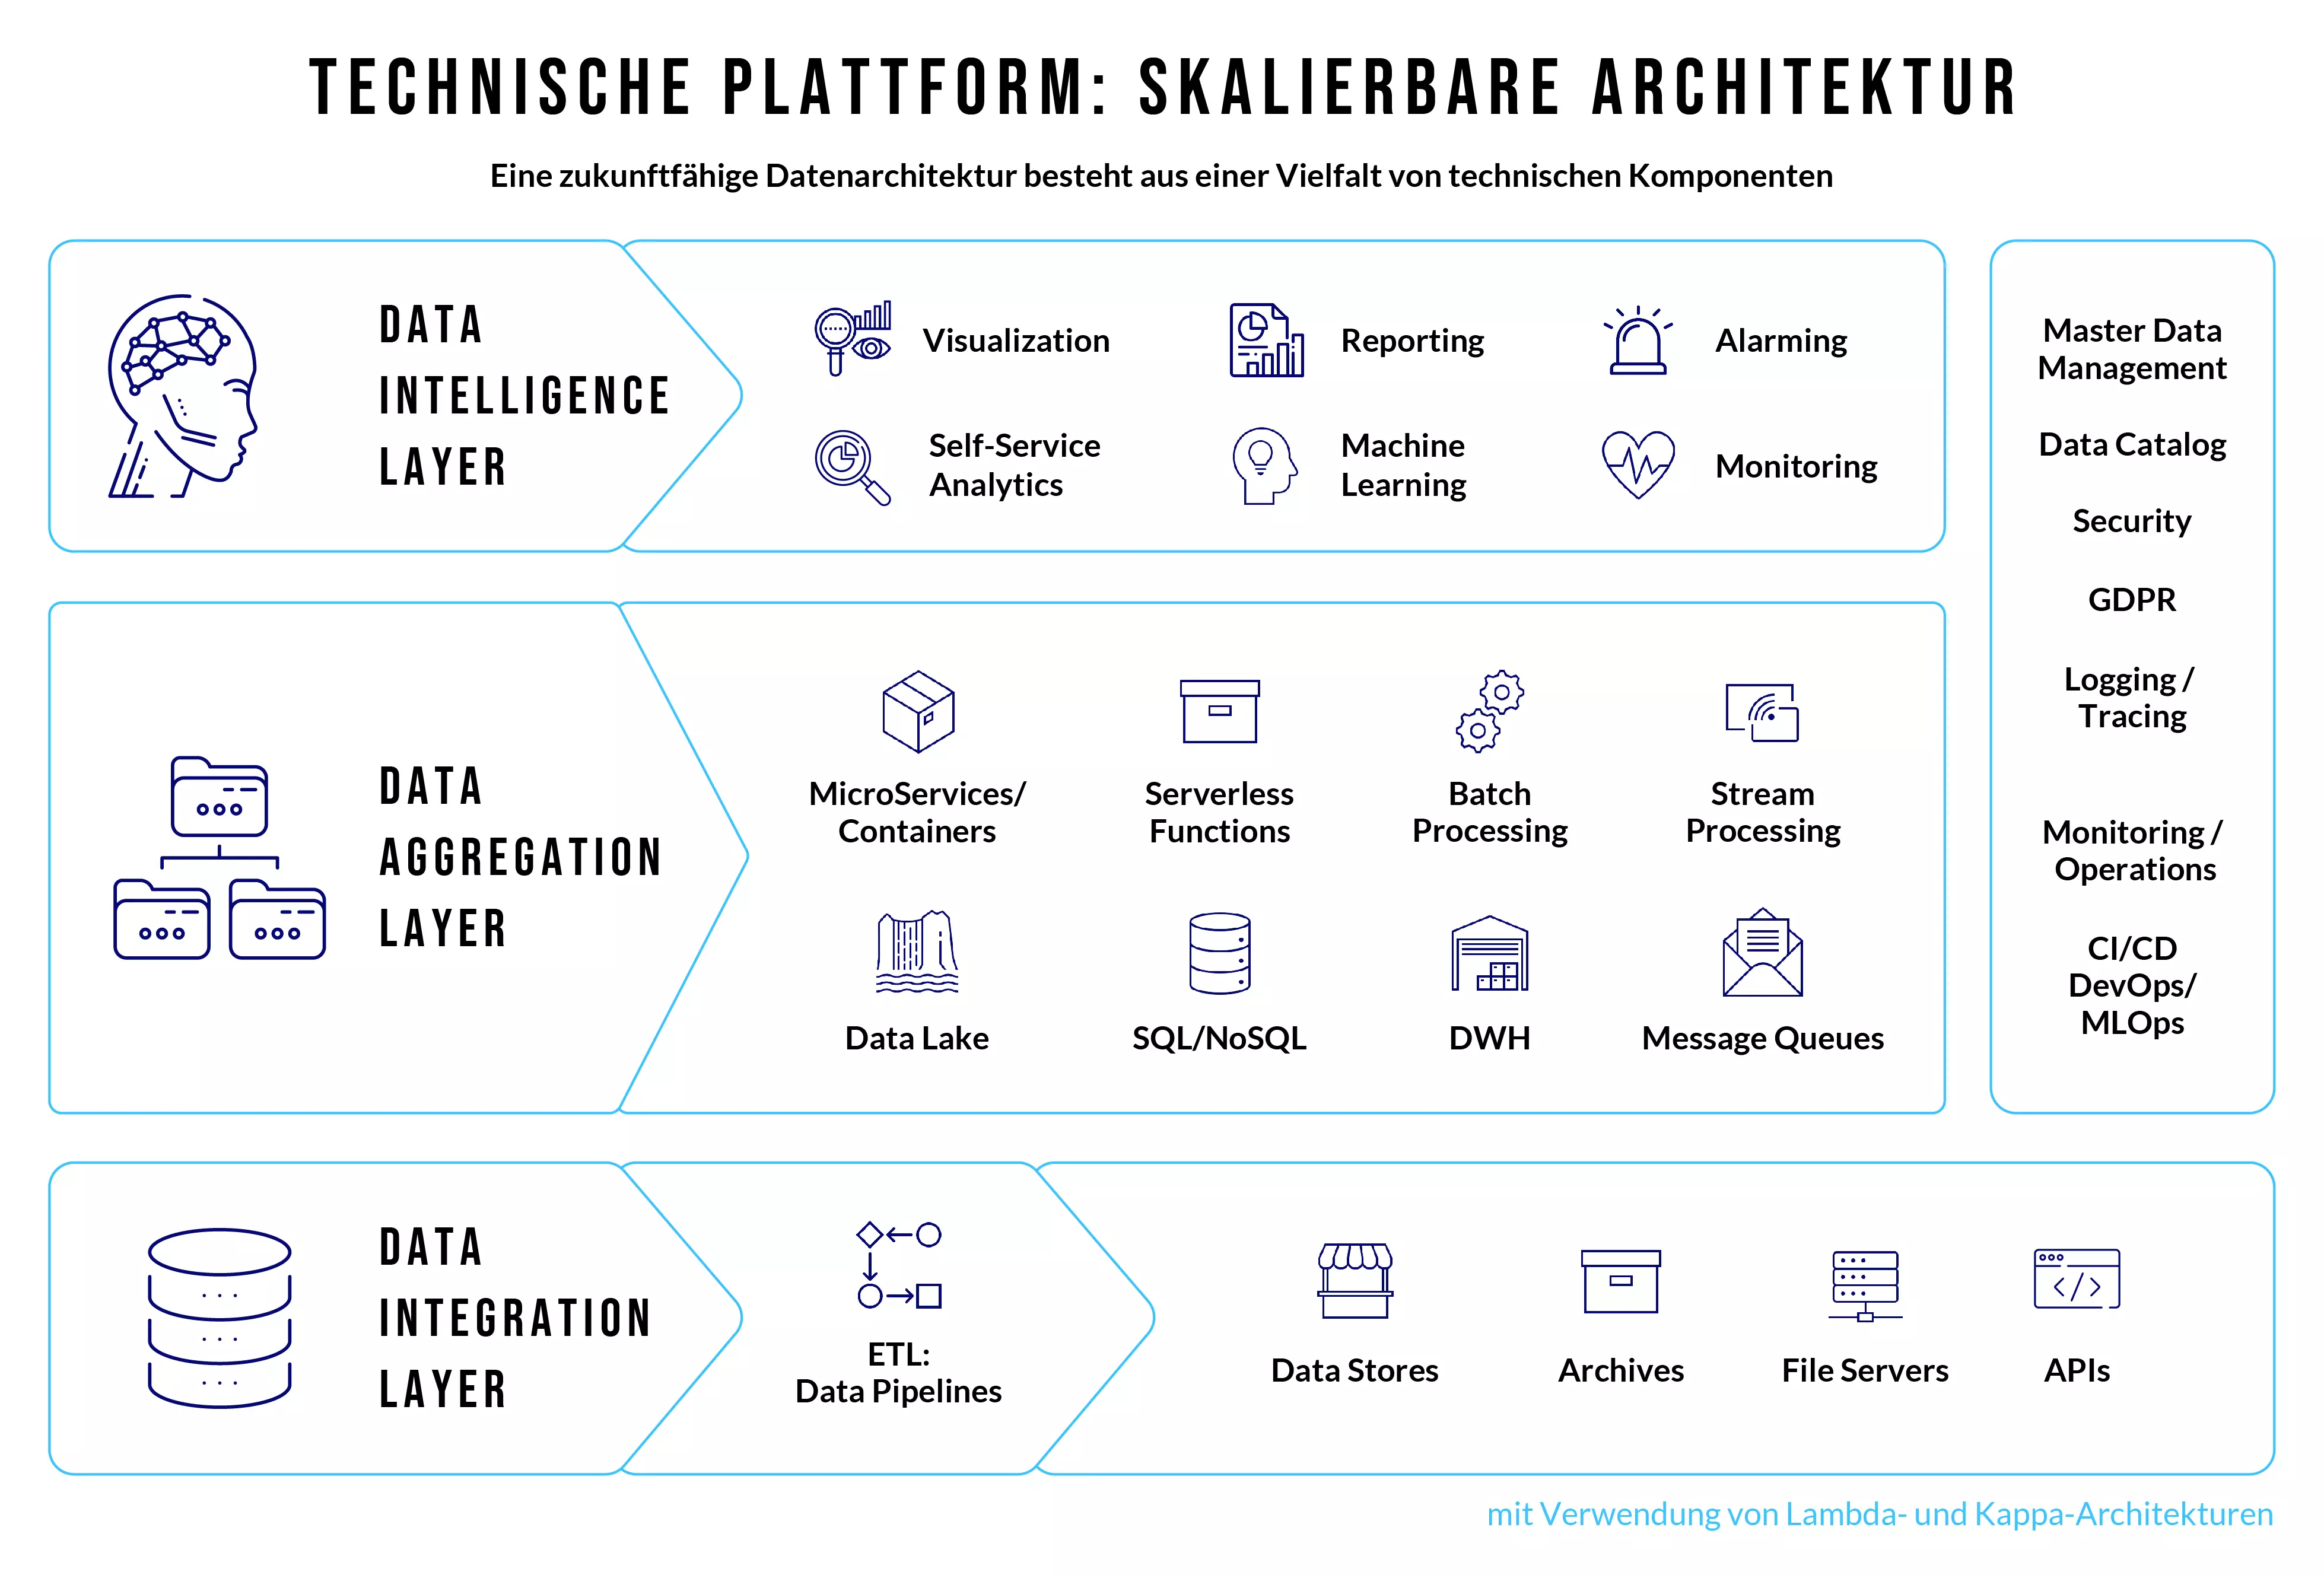 Skalierbare Architektur:
													Eine zukunftsfähige Datenarchitektur besteht aus eine Vielfalt von technischen Komponenten
													(Lambda-Architektur, Kappa-Architektur)